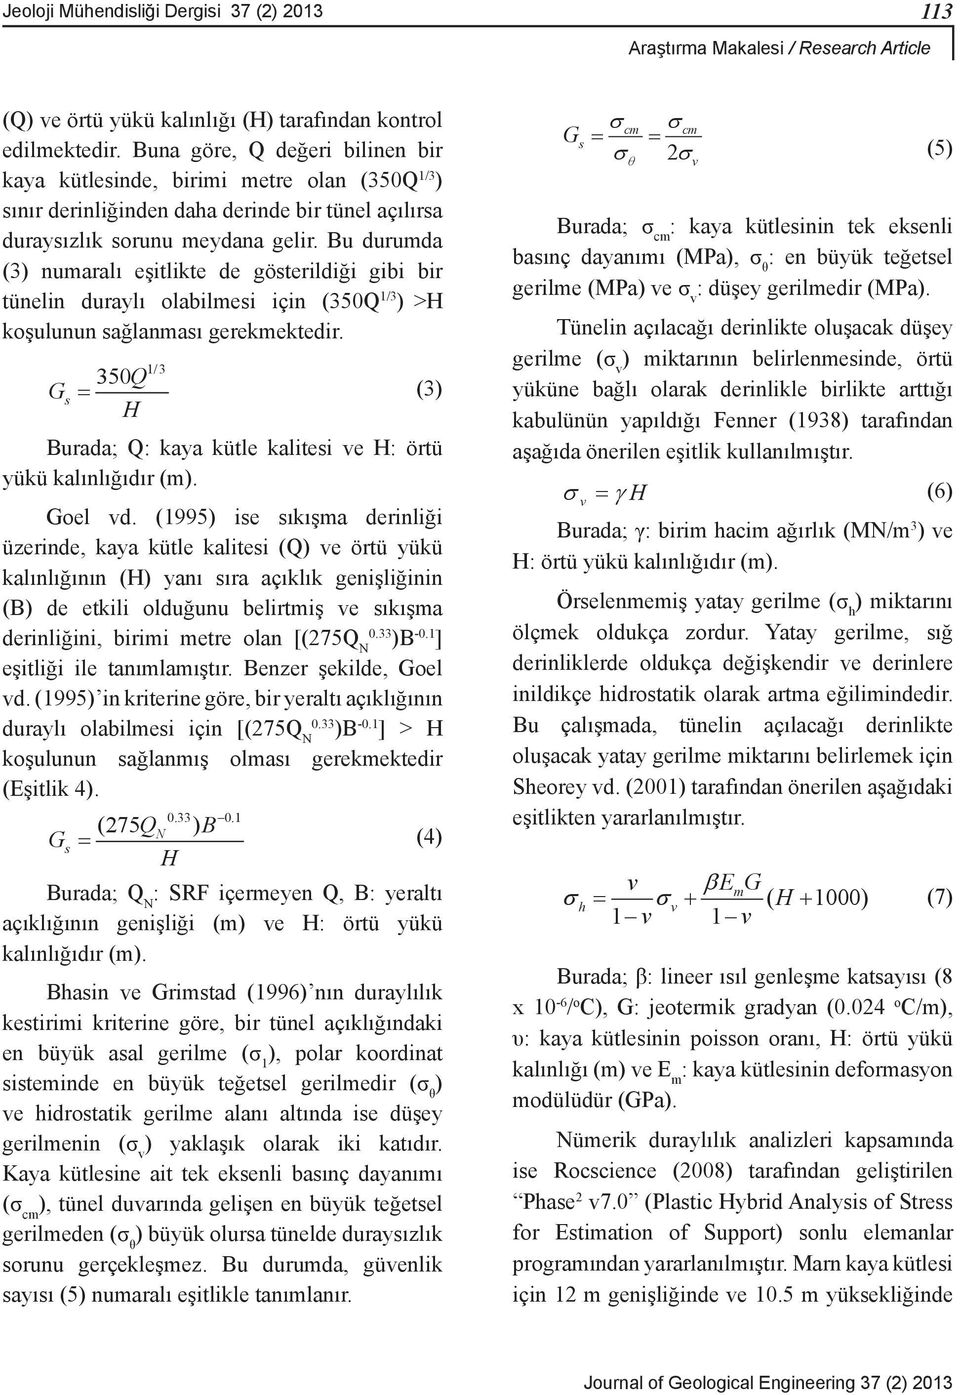 (1996) nn Bu durayllk iki kestirimi kriterin açklklarnn durayllğ, durayllk analizlerinde güvenlik says asal gerilme (G s ) ile (σifade 1 ), polar edilmektedir.